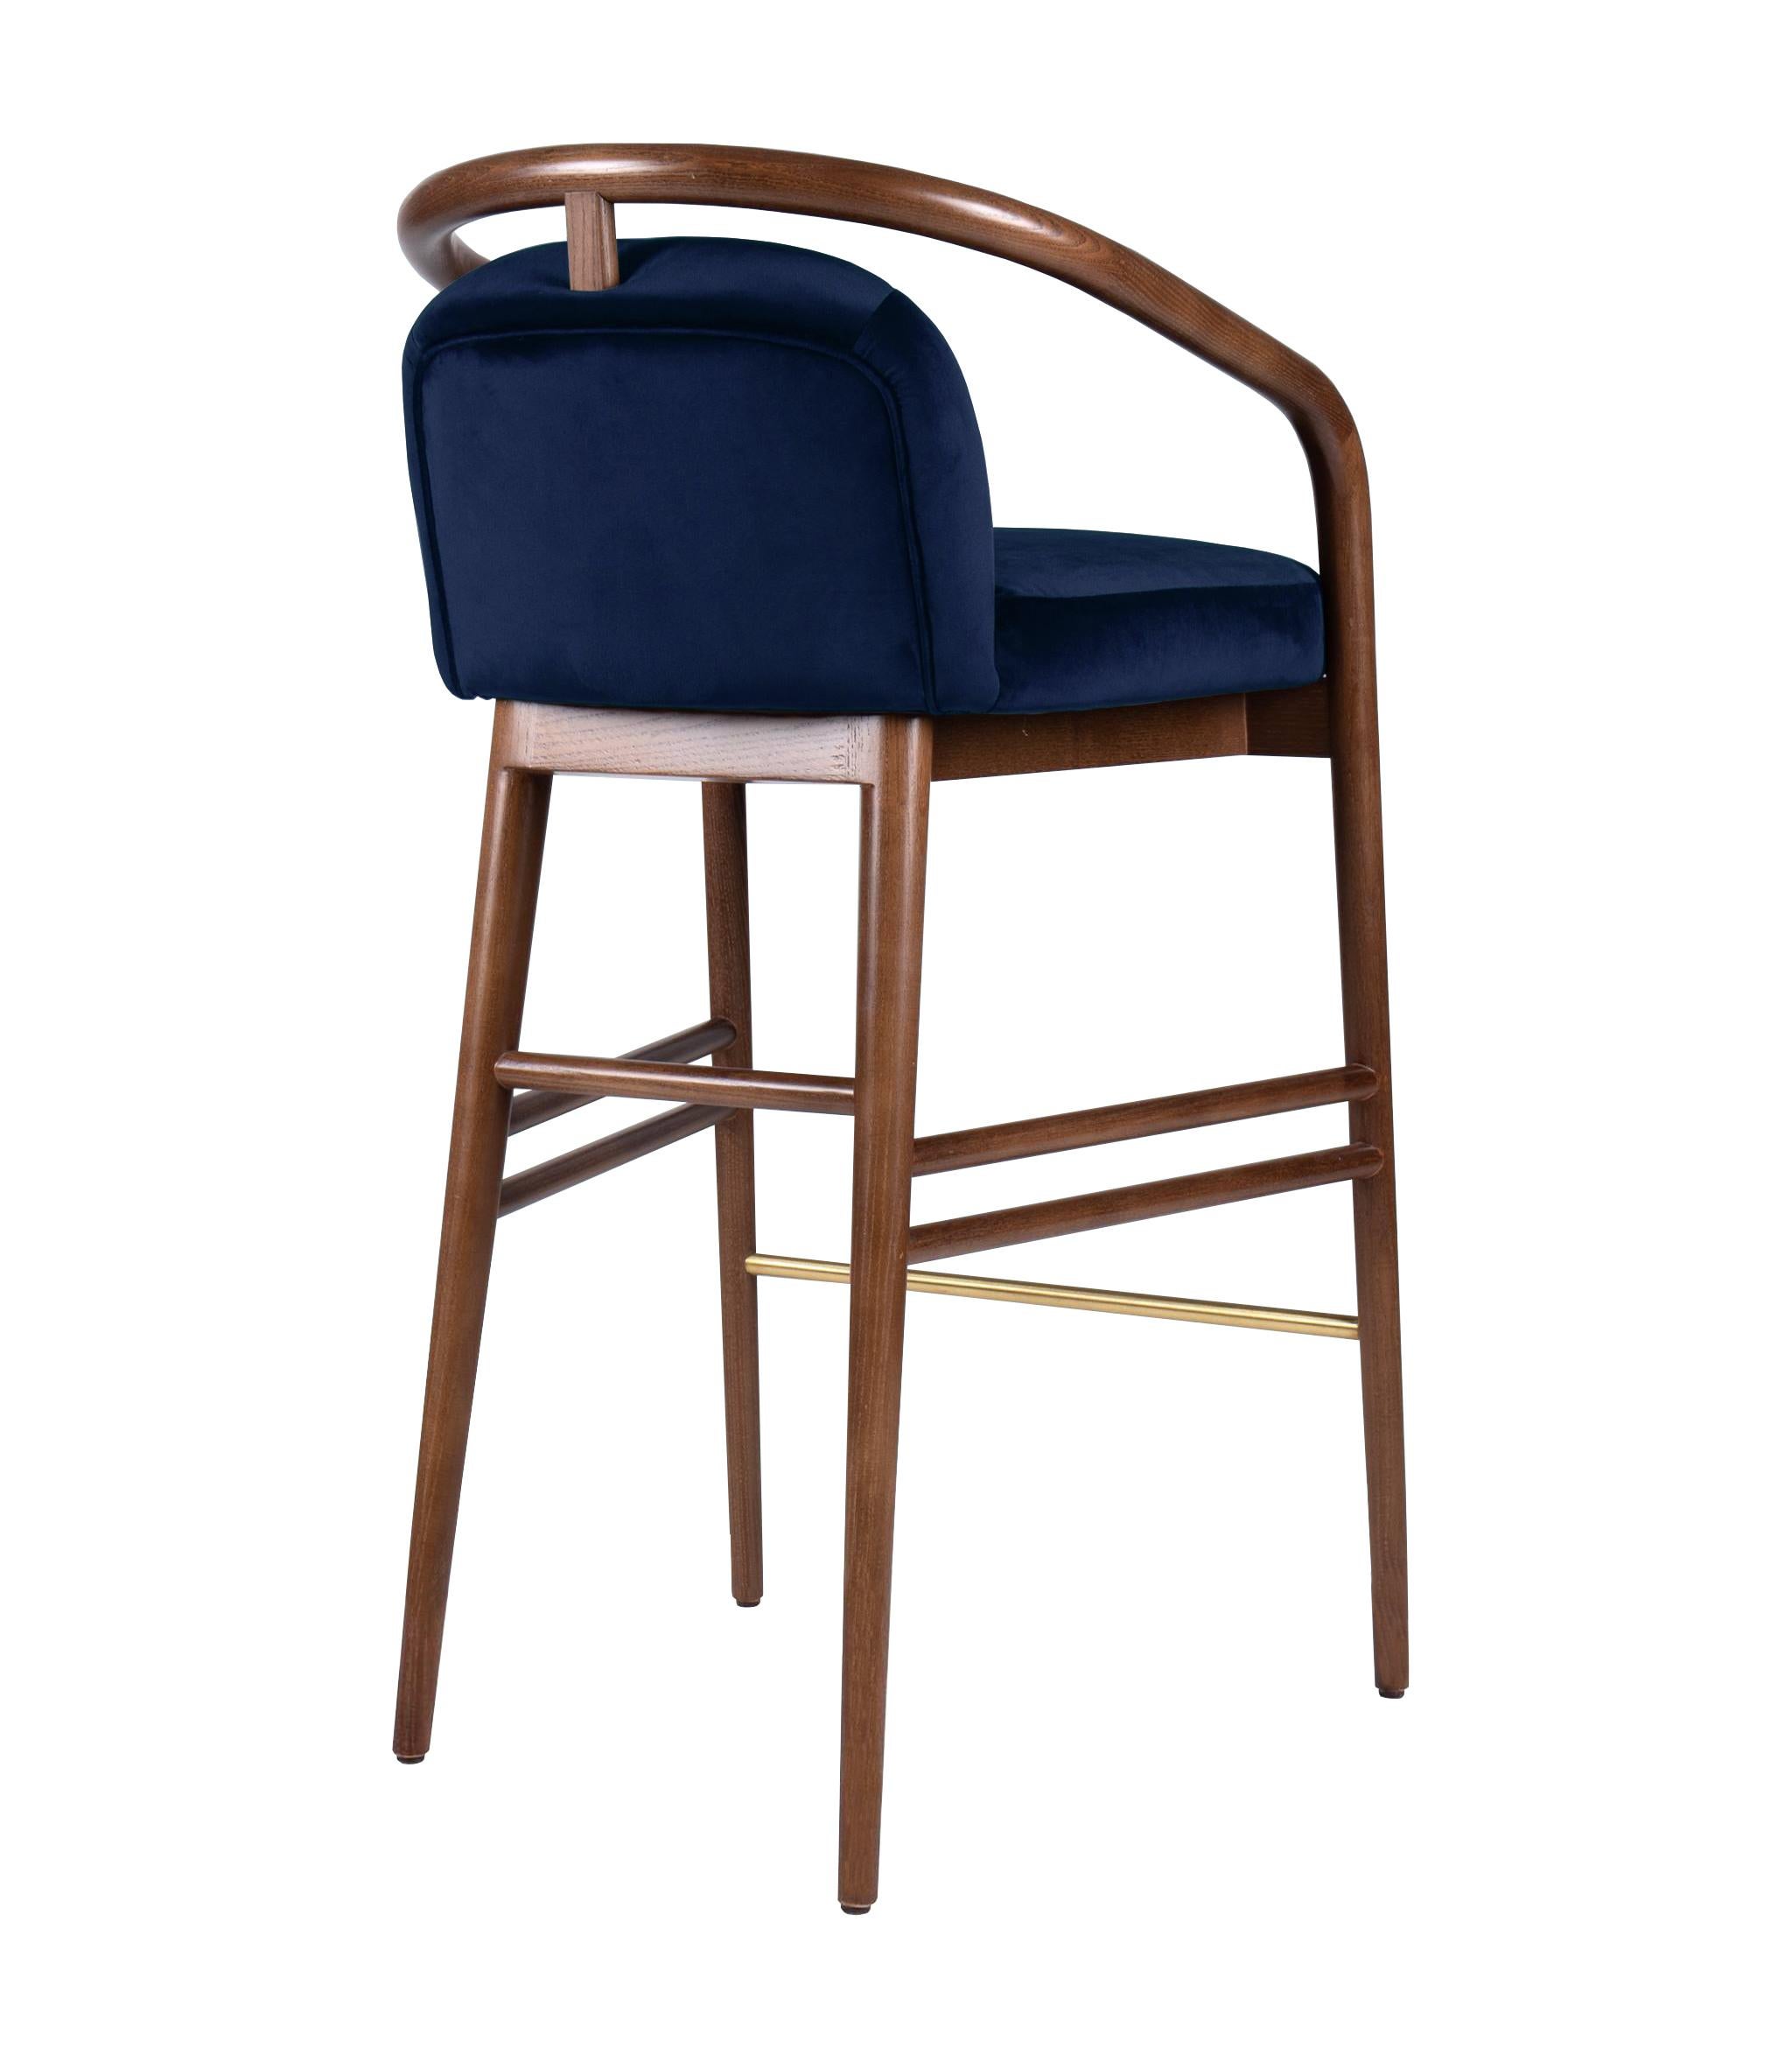 blue velvet bar stools